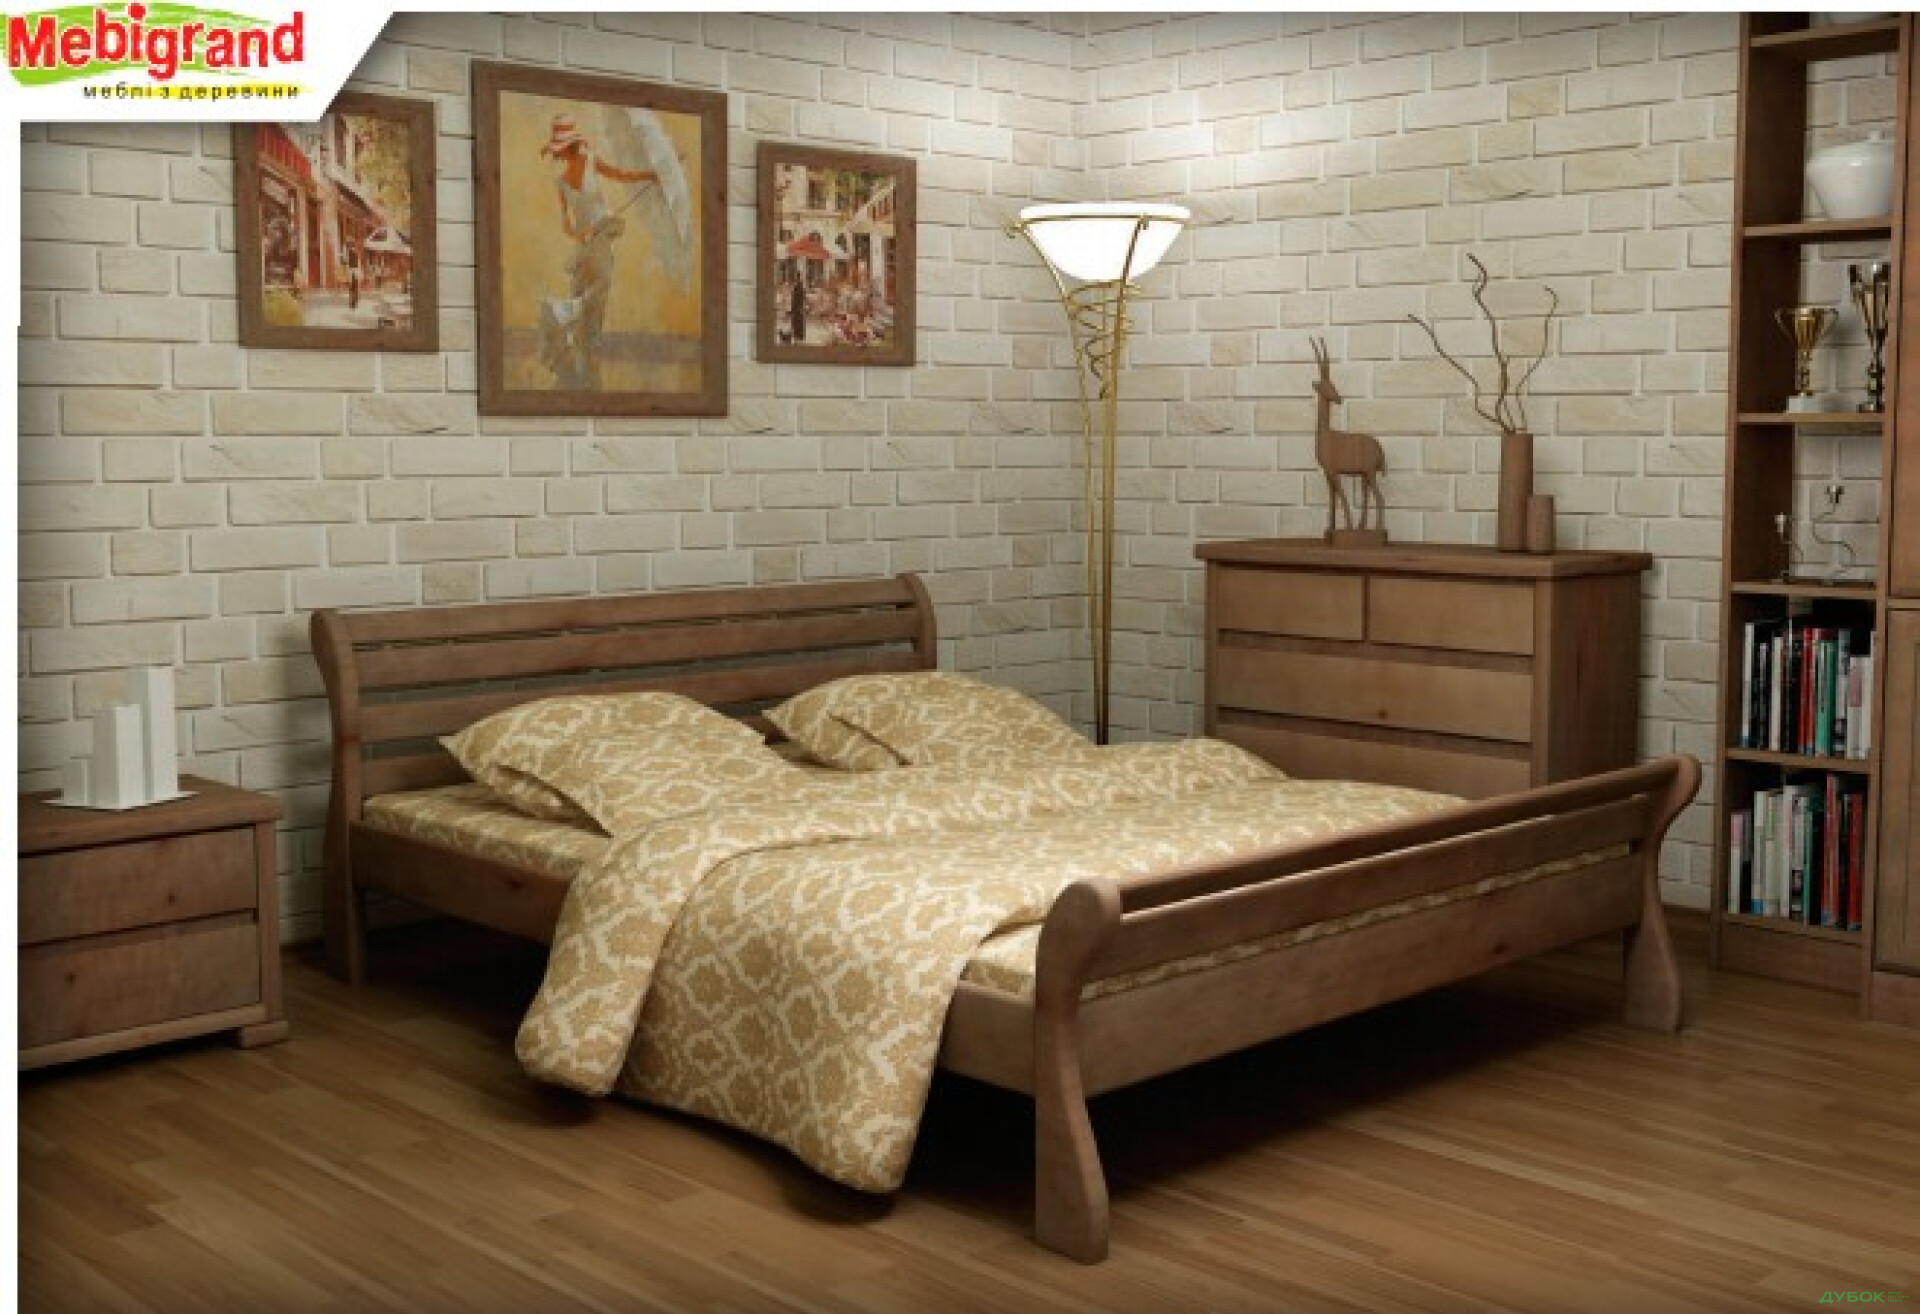 Фото 1 - Кровать двуспальная деревяная Верона 180 Mebigrand